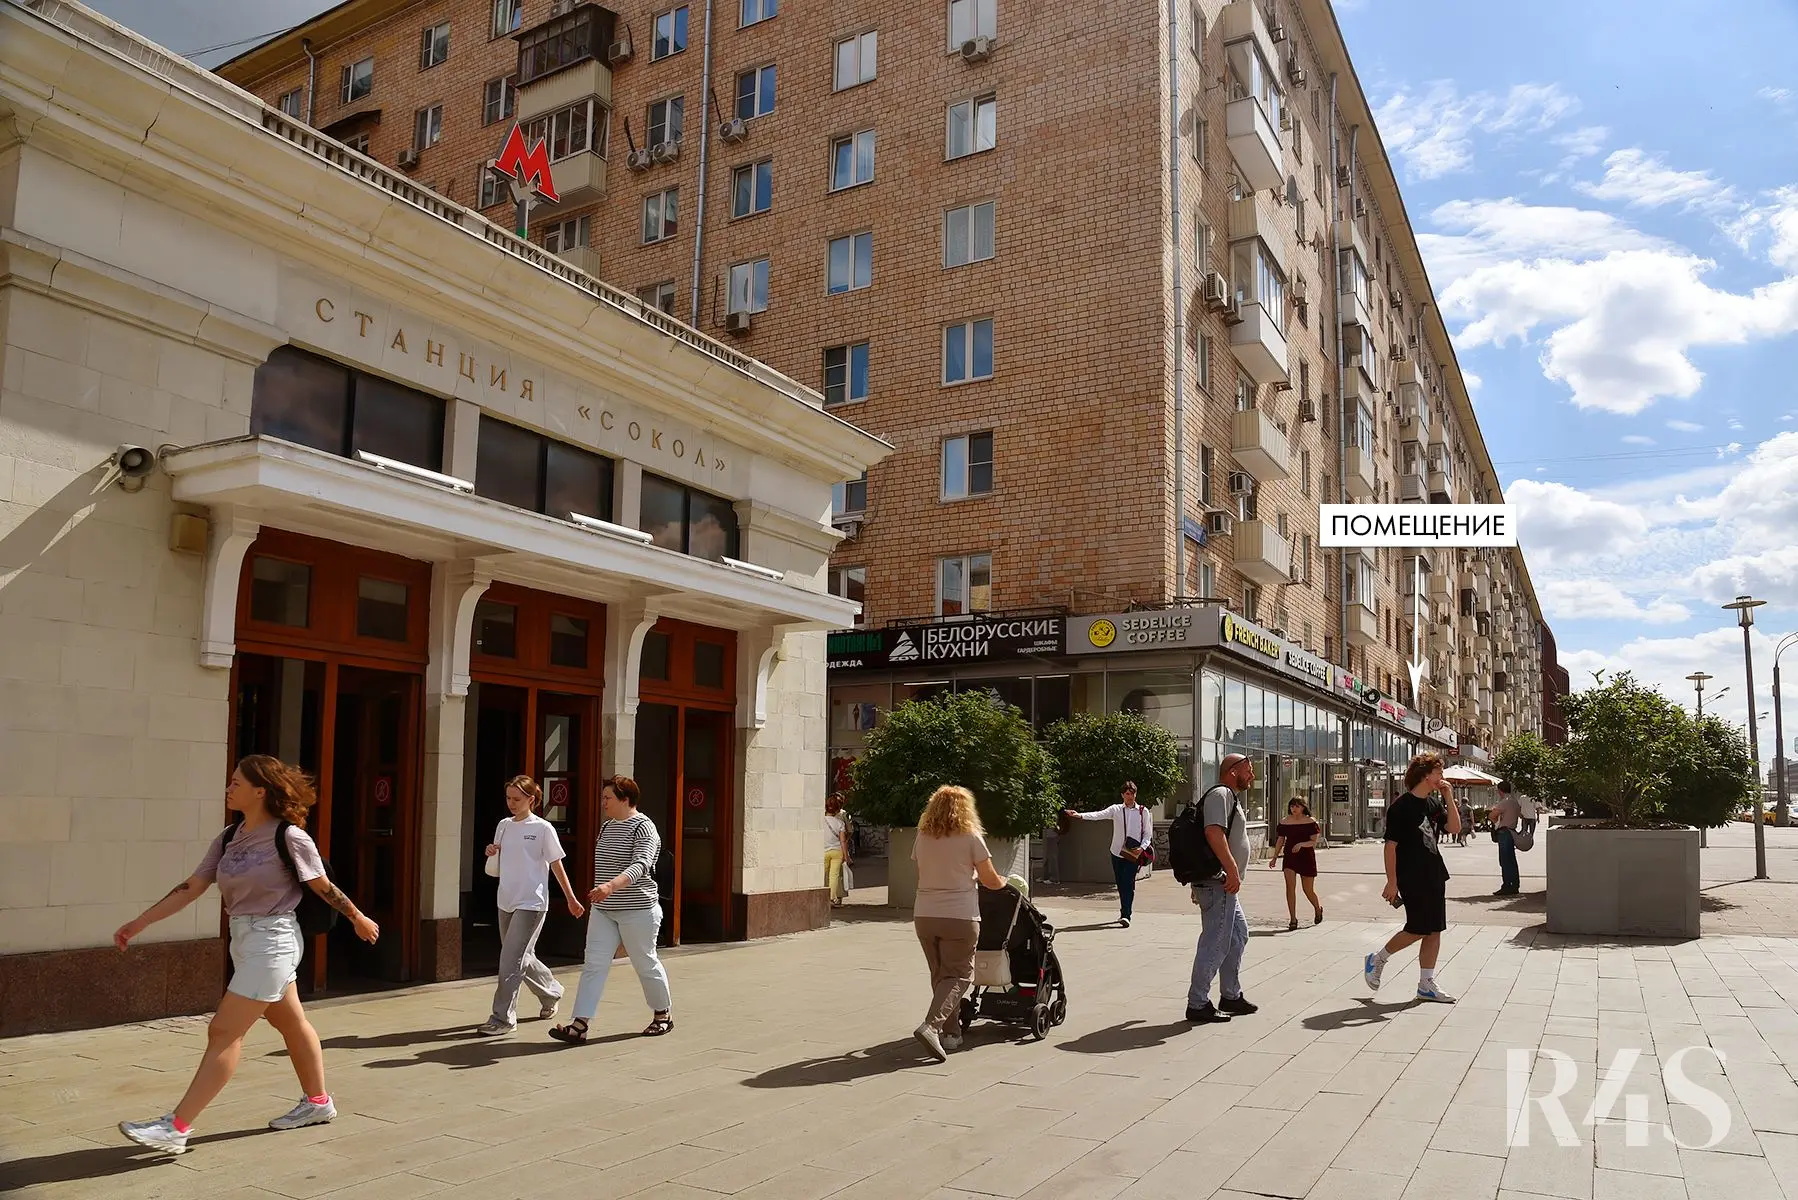 Аренда торгового помещения площадью 27.2 м2 в Москве: Ленинградский проспект, 74 R4S | Realty4Sale